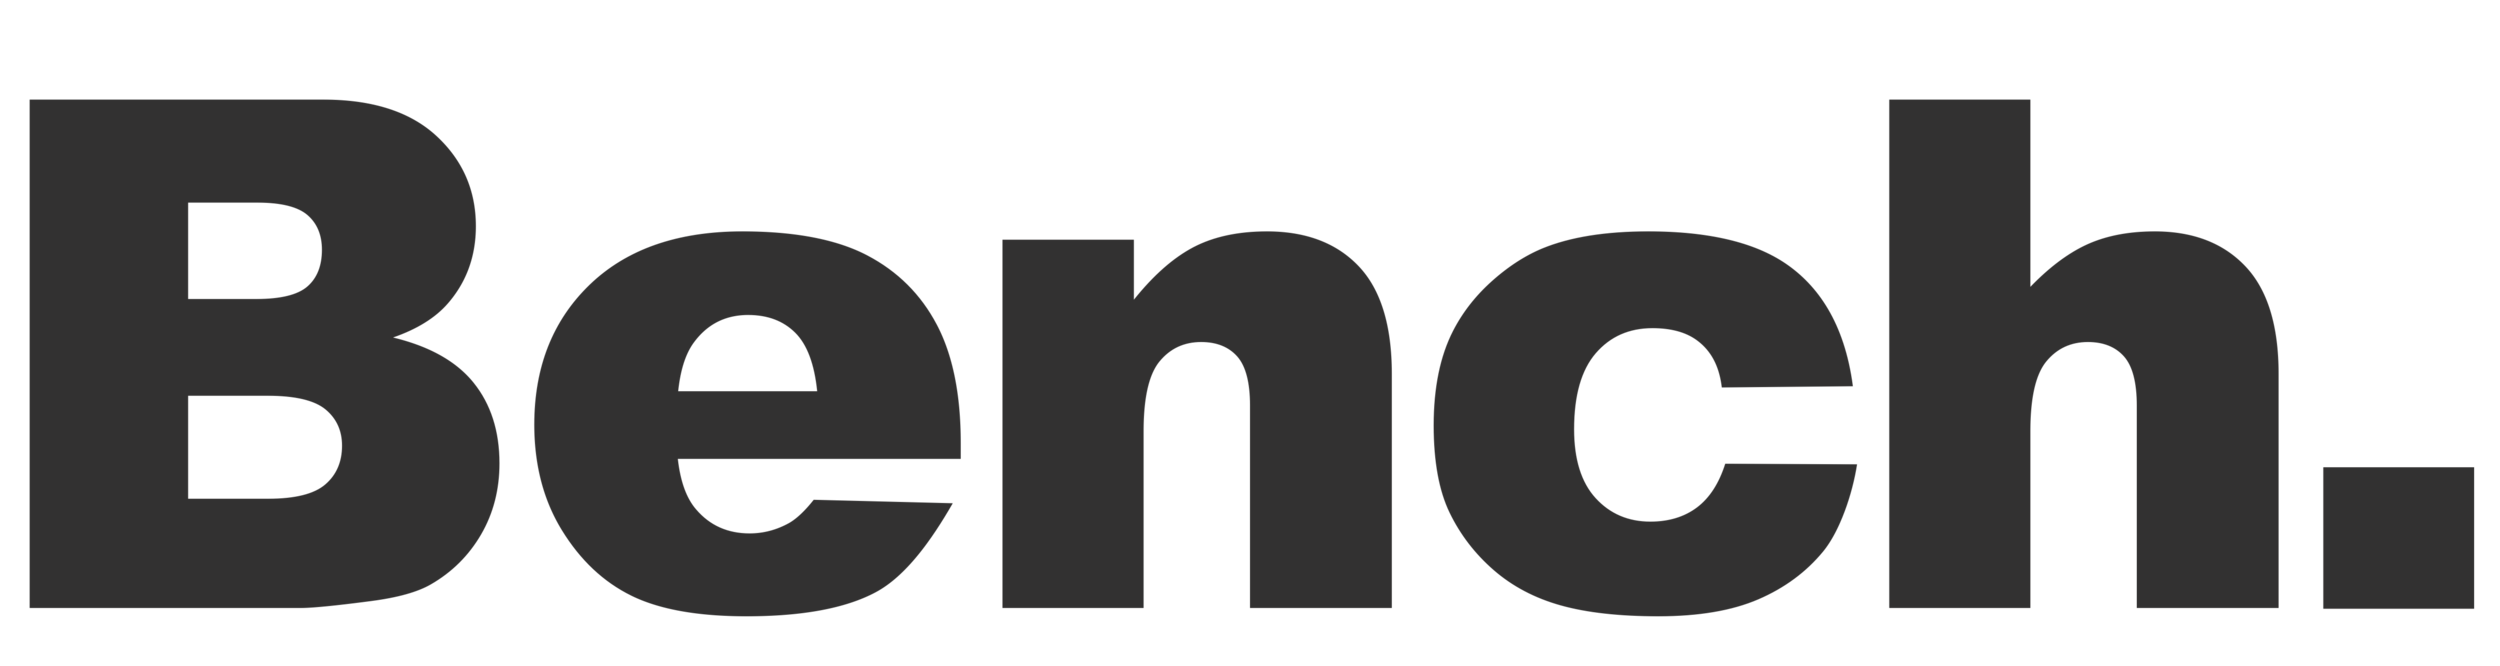 Bench_Logo_OG